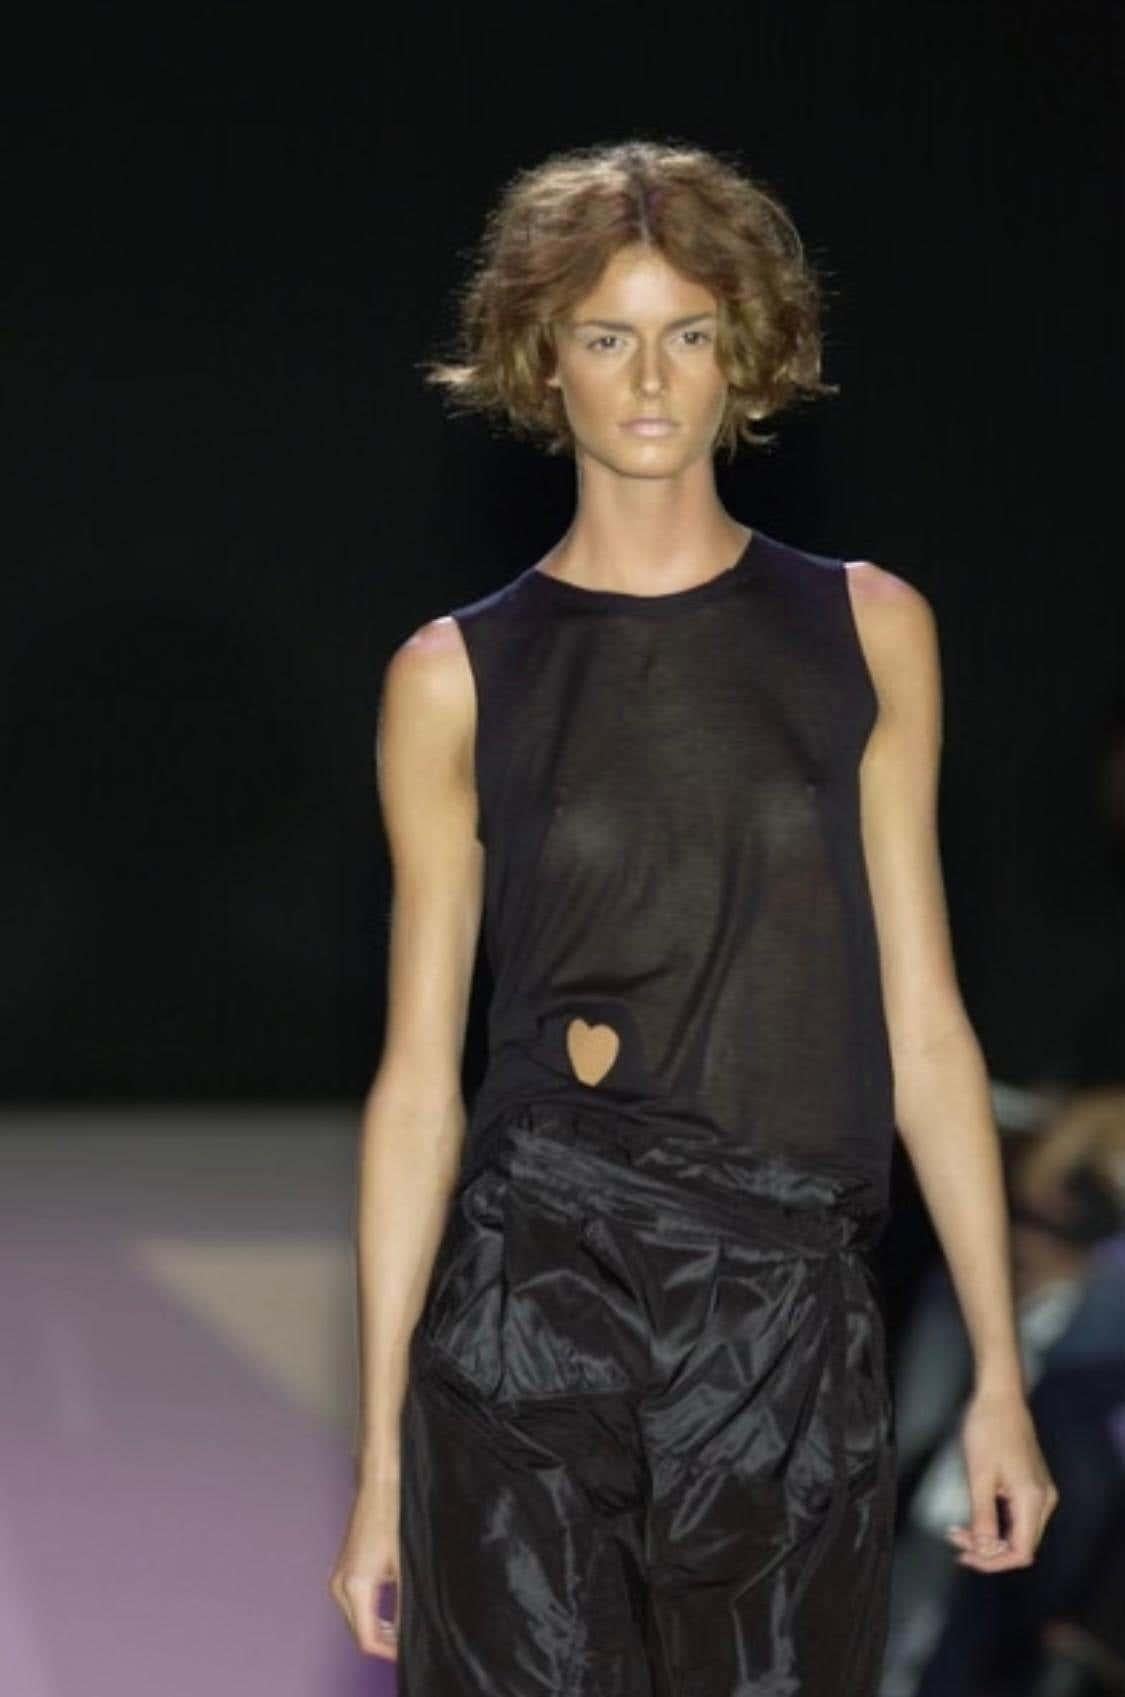 Ich präsentiere ein schwarzes, ärmelloses Gucci-Hemd, entworfen von Tom Ford. Aus der Frühjahr/Sommer-Kollektion 2002 wurde dieses Oberteil erstmals in Look 33 von Jacquetta Wheeler gezeigt, während die weiße Version in Look 3 von Abbey Shaine